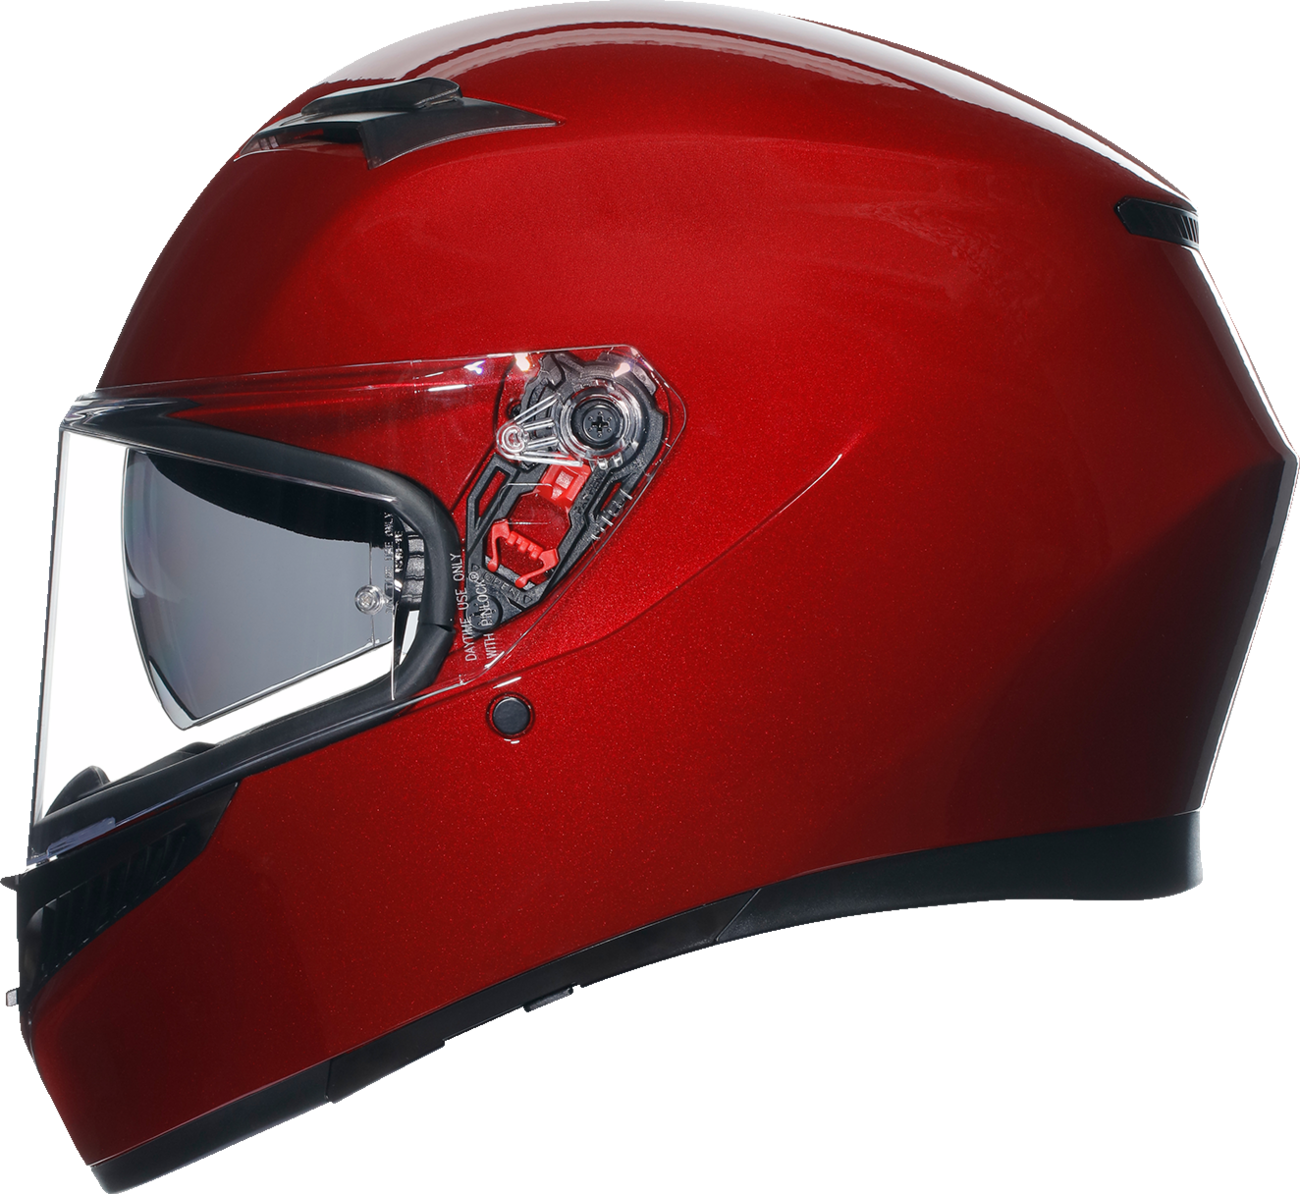 AGV K3 Helmet - Competizione Red - Small 2118381004016S